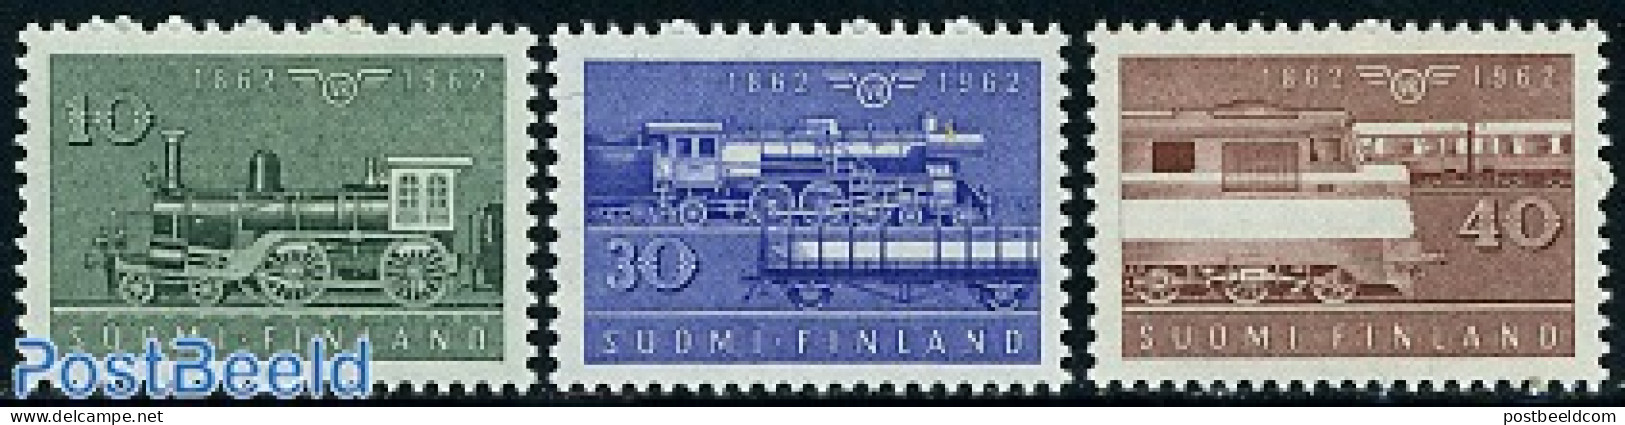 Finland 1962 Railways Centenary 3v, Mint NH, Transport - Railways - Ungebraucht